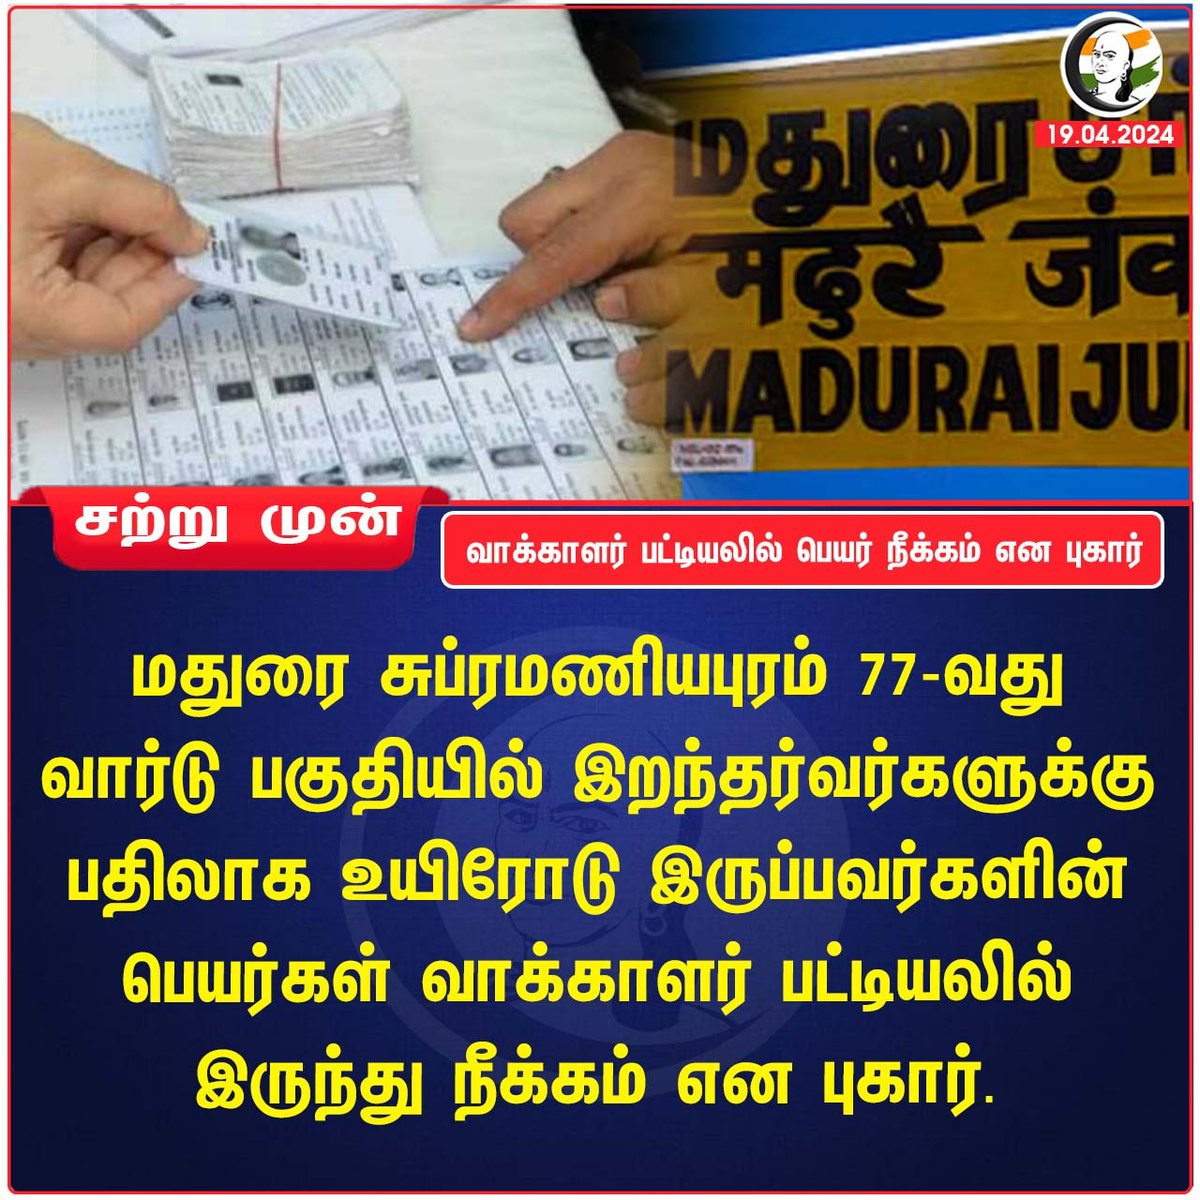 வாக்காளர் பட்டியலில் பெயர் நீக்கம் என புகார்
#Madurai #vote4change #castyourvote